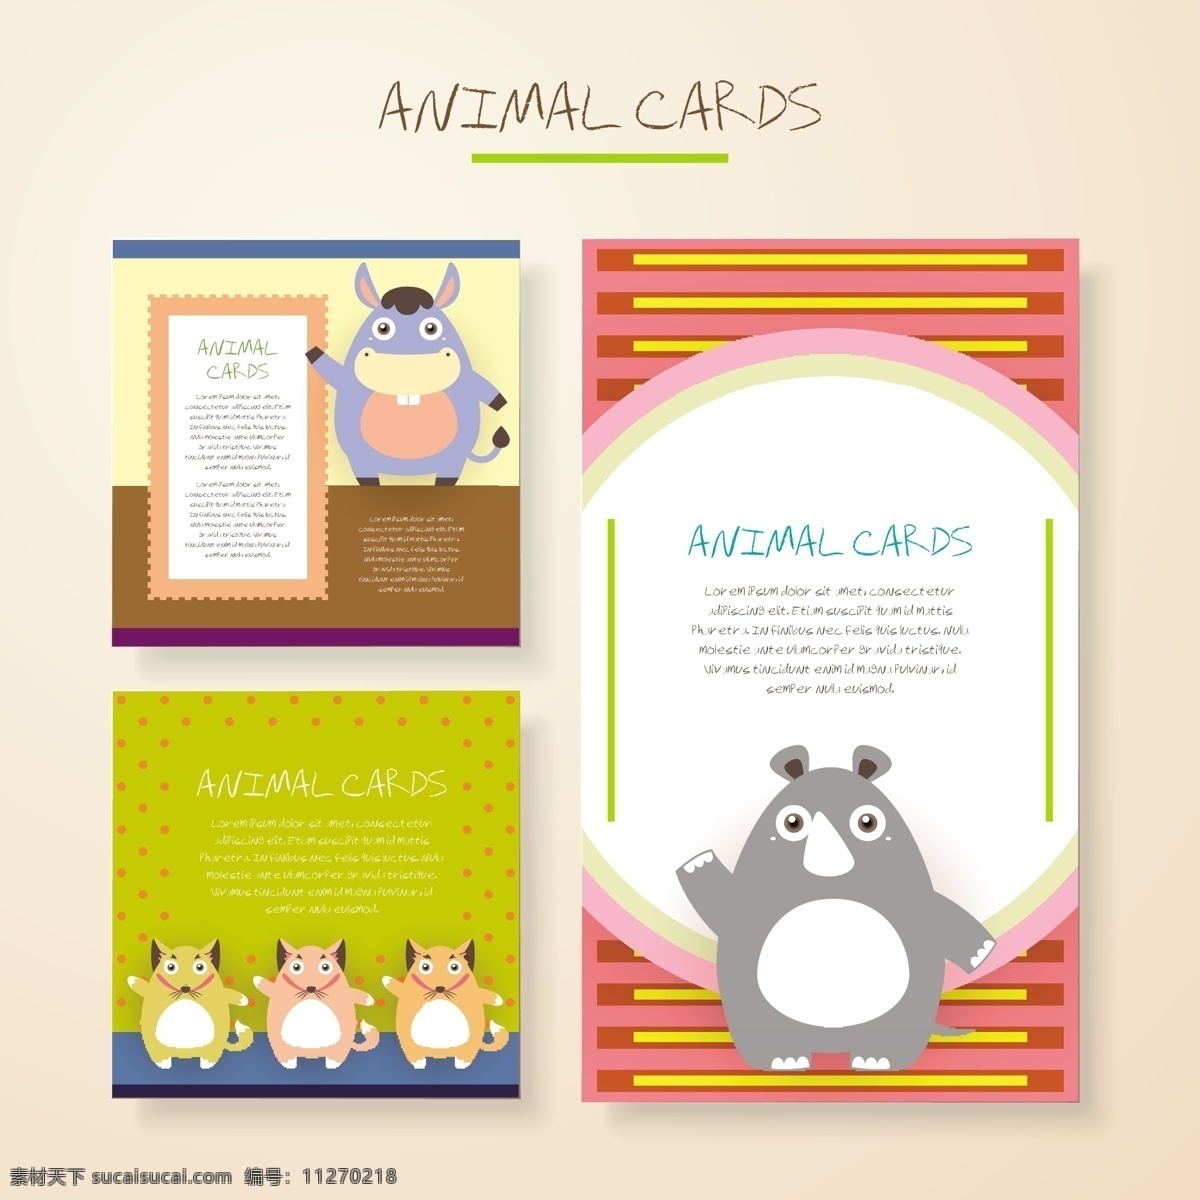 大象 可爱 卡通 动物 卡片 矢量 儿童 生日 邀请卡 填充背景 手绘 矢量素材 平面设计素材